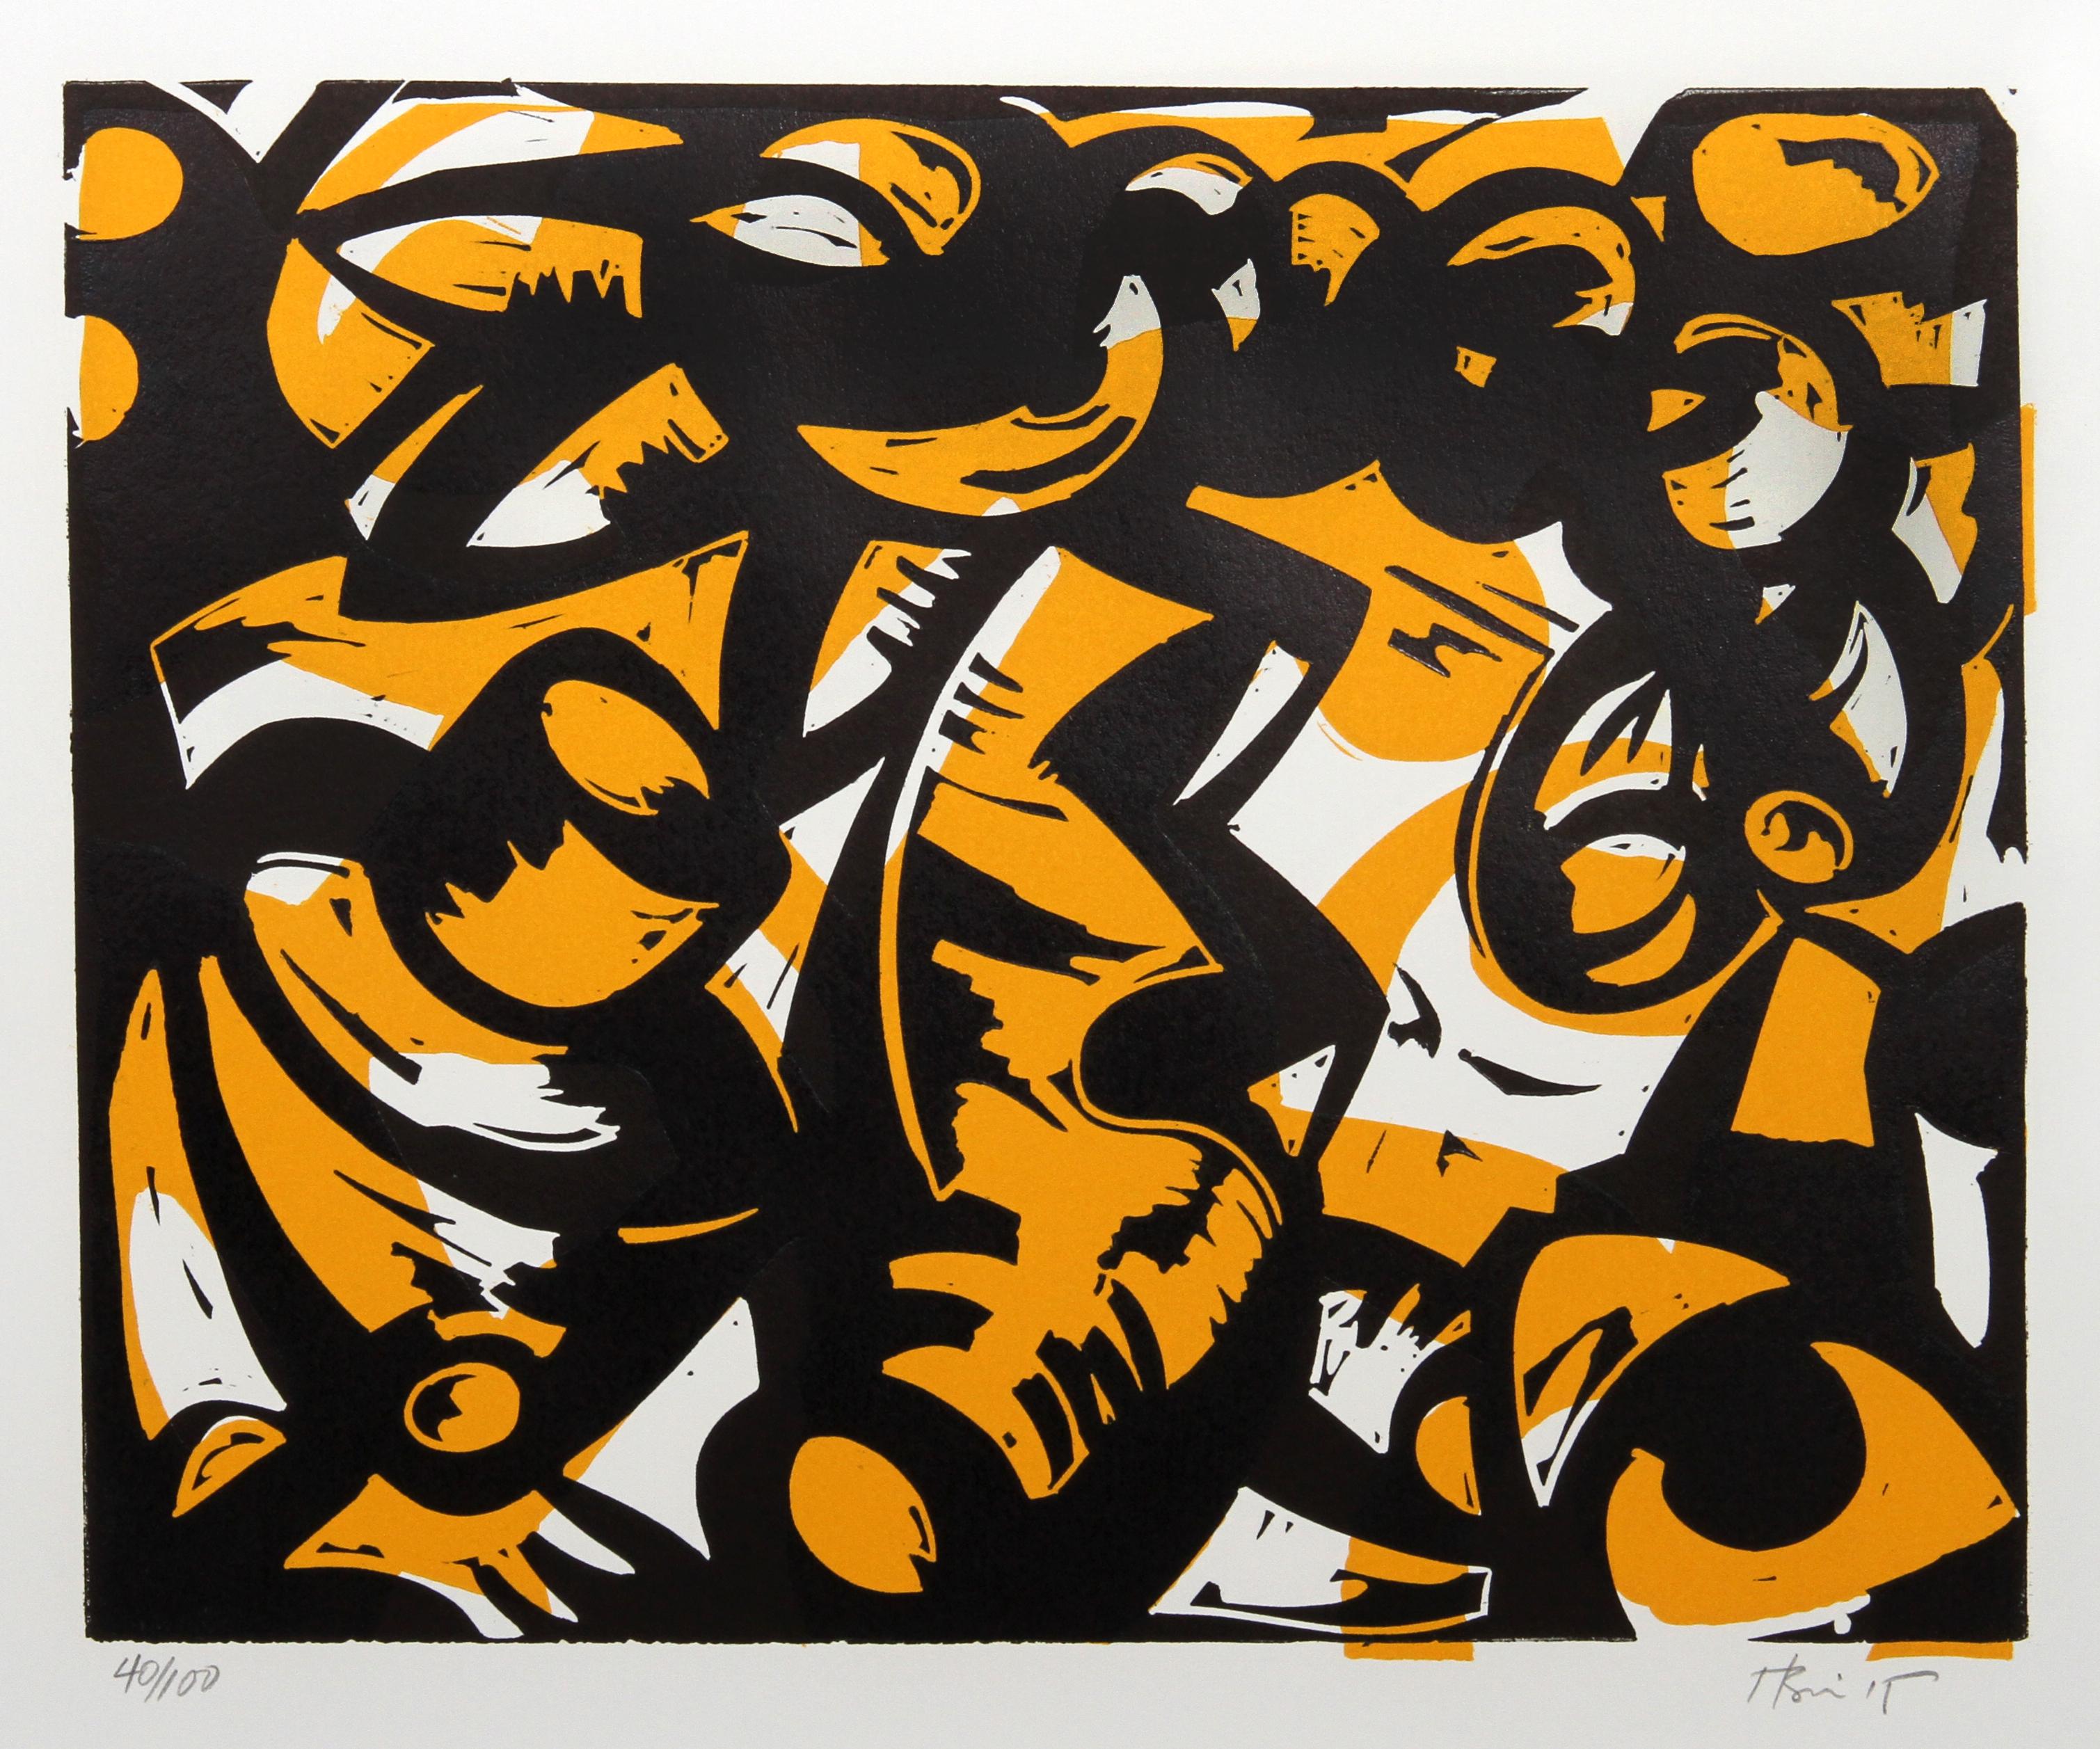 Artiste : Charlie Hewitt, américain (1946 - )
Titre : Sans titre - E
Médium : Blocs de bois, signés et numérotés au crayon
Edition : 100
Taille : 20 in. x 24 in. (50,8 cm x 60,96 cm)